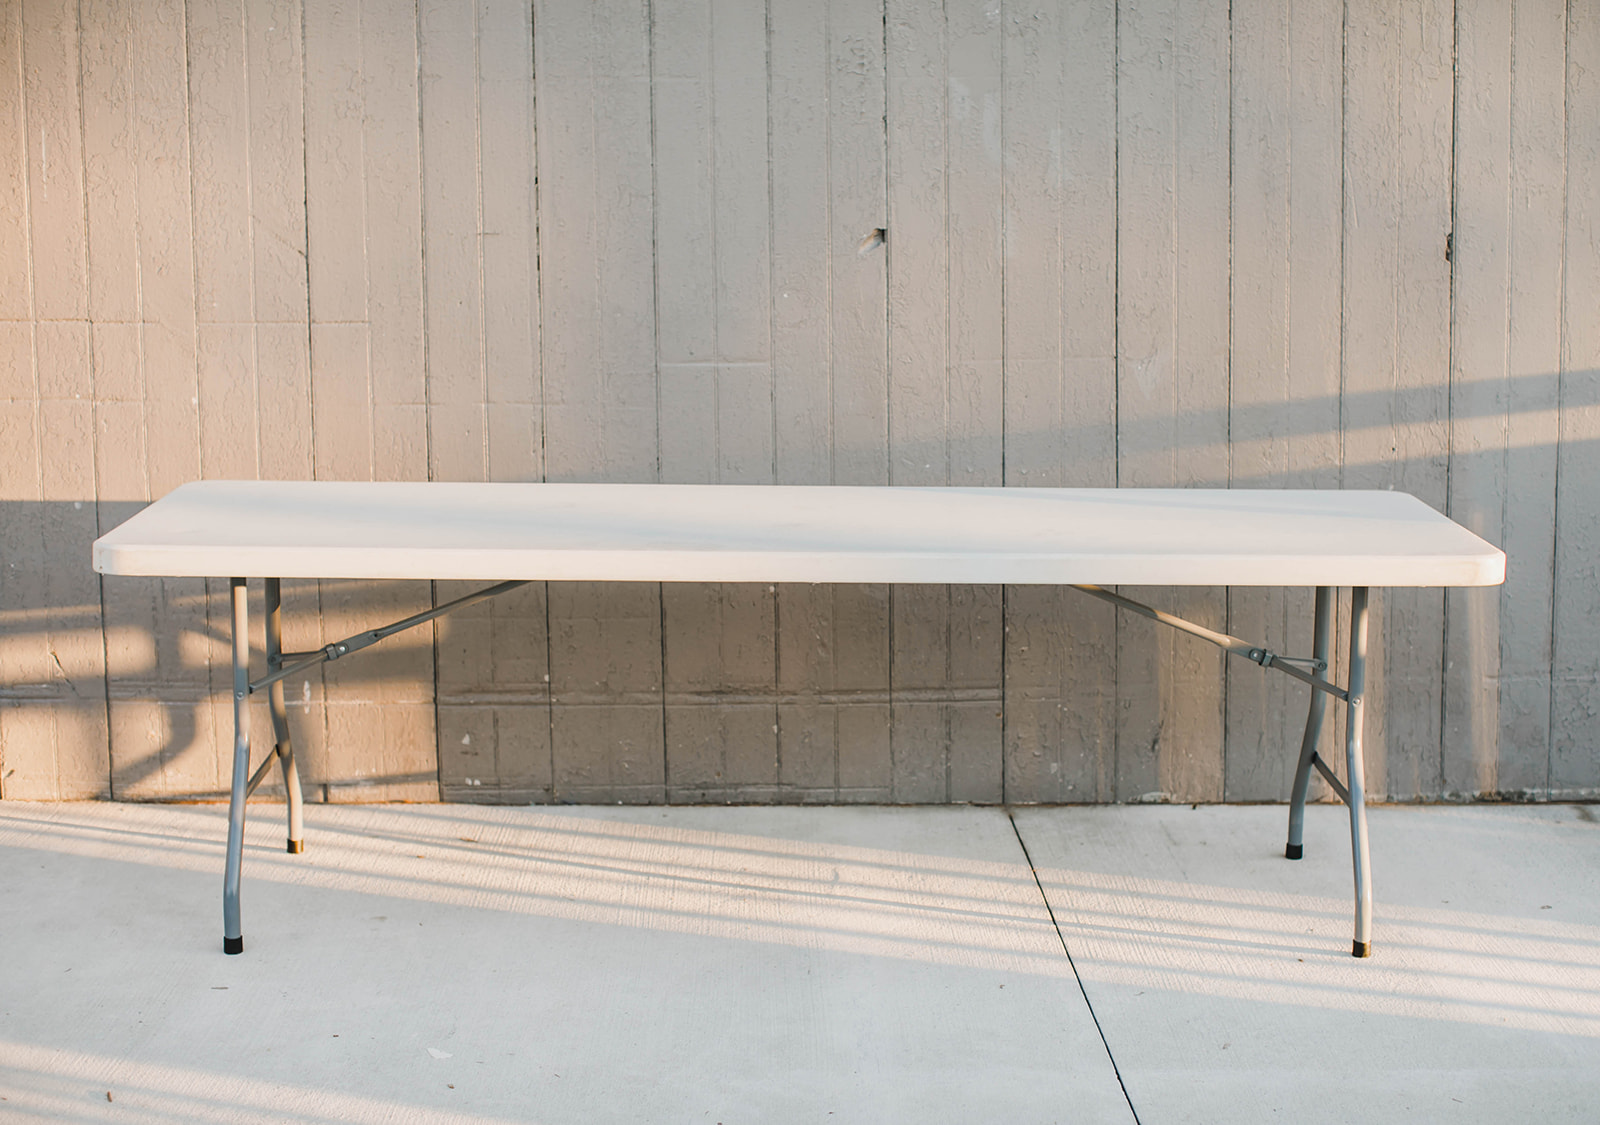 Rectangular Table Linens - Event Rentals Bend, Oregon